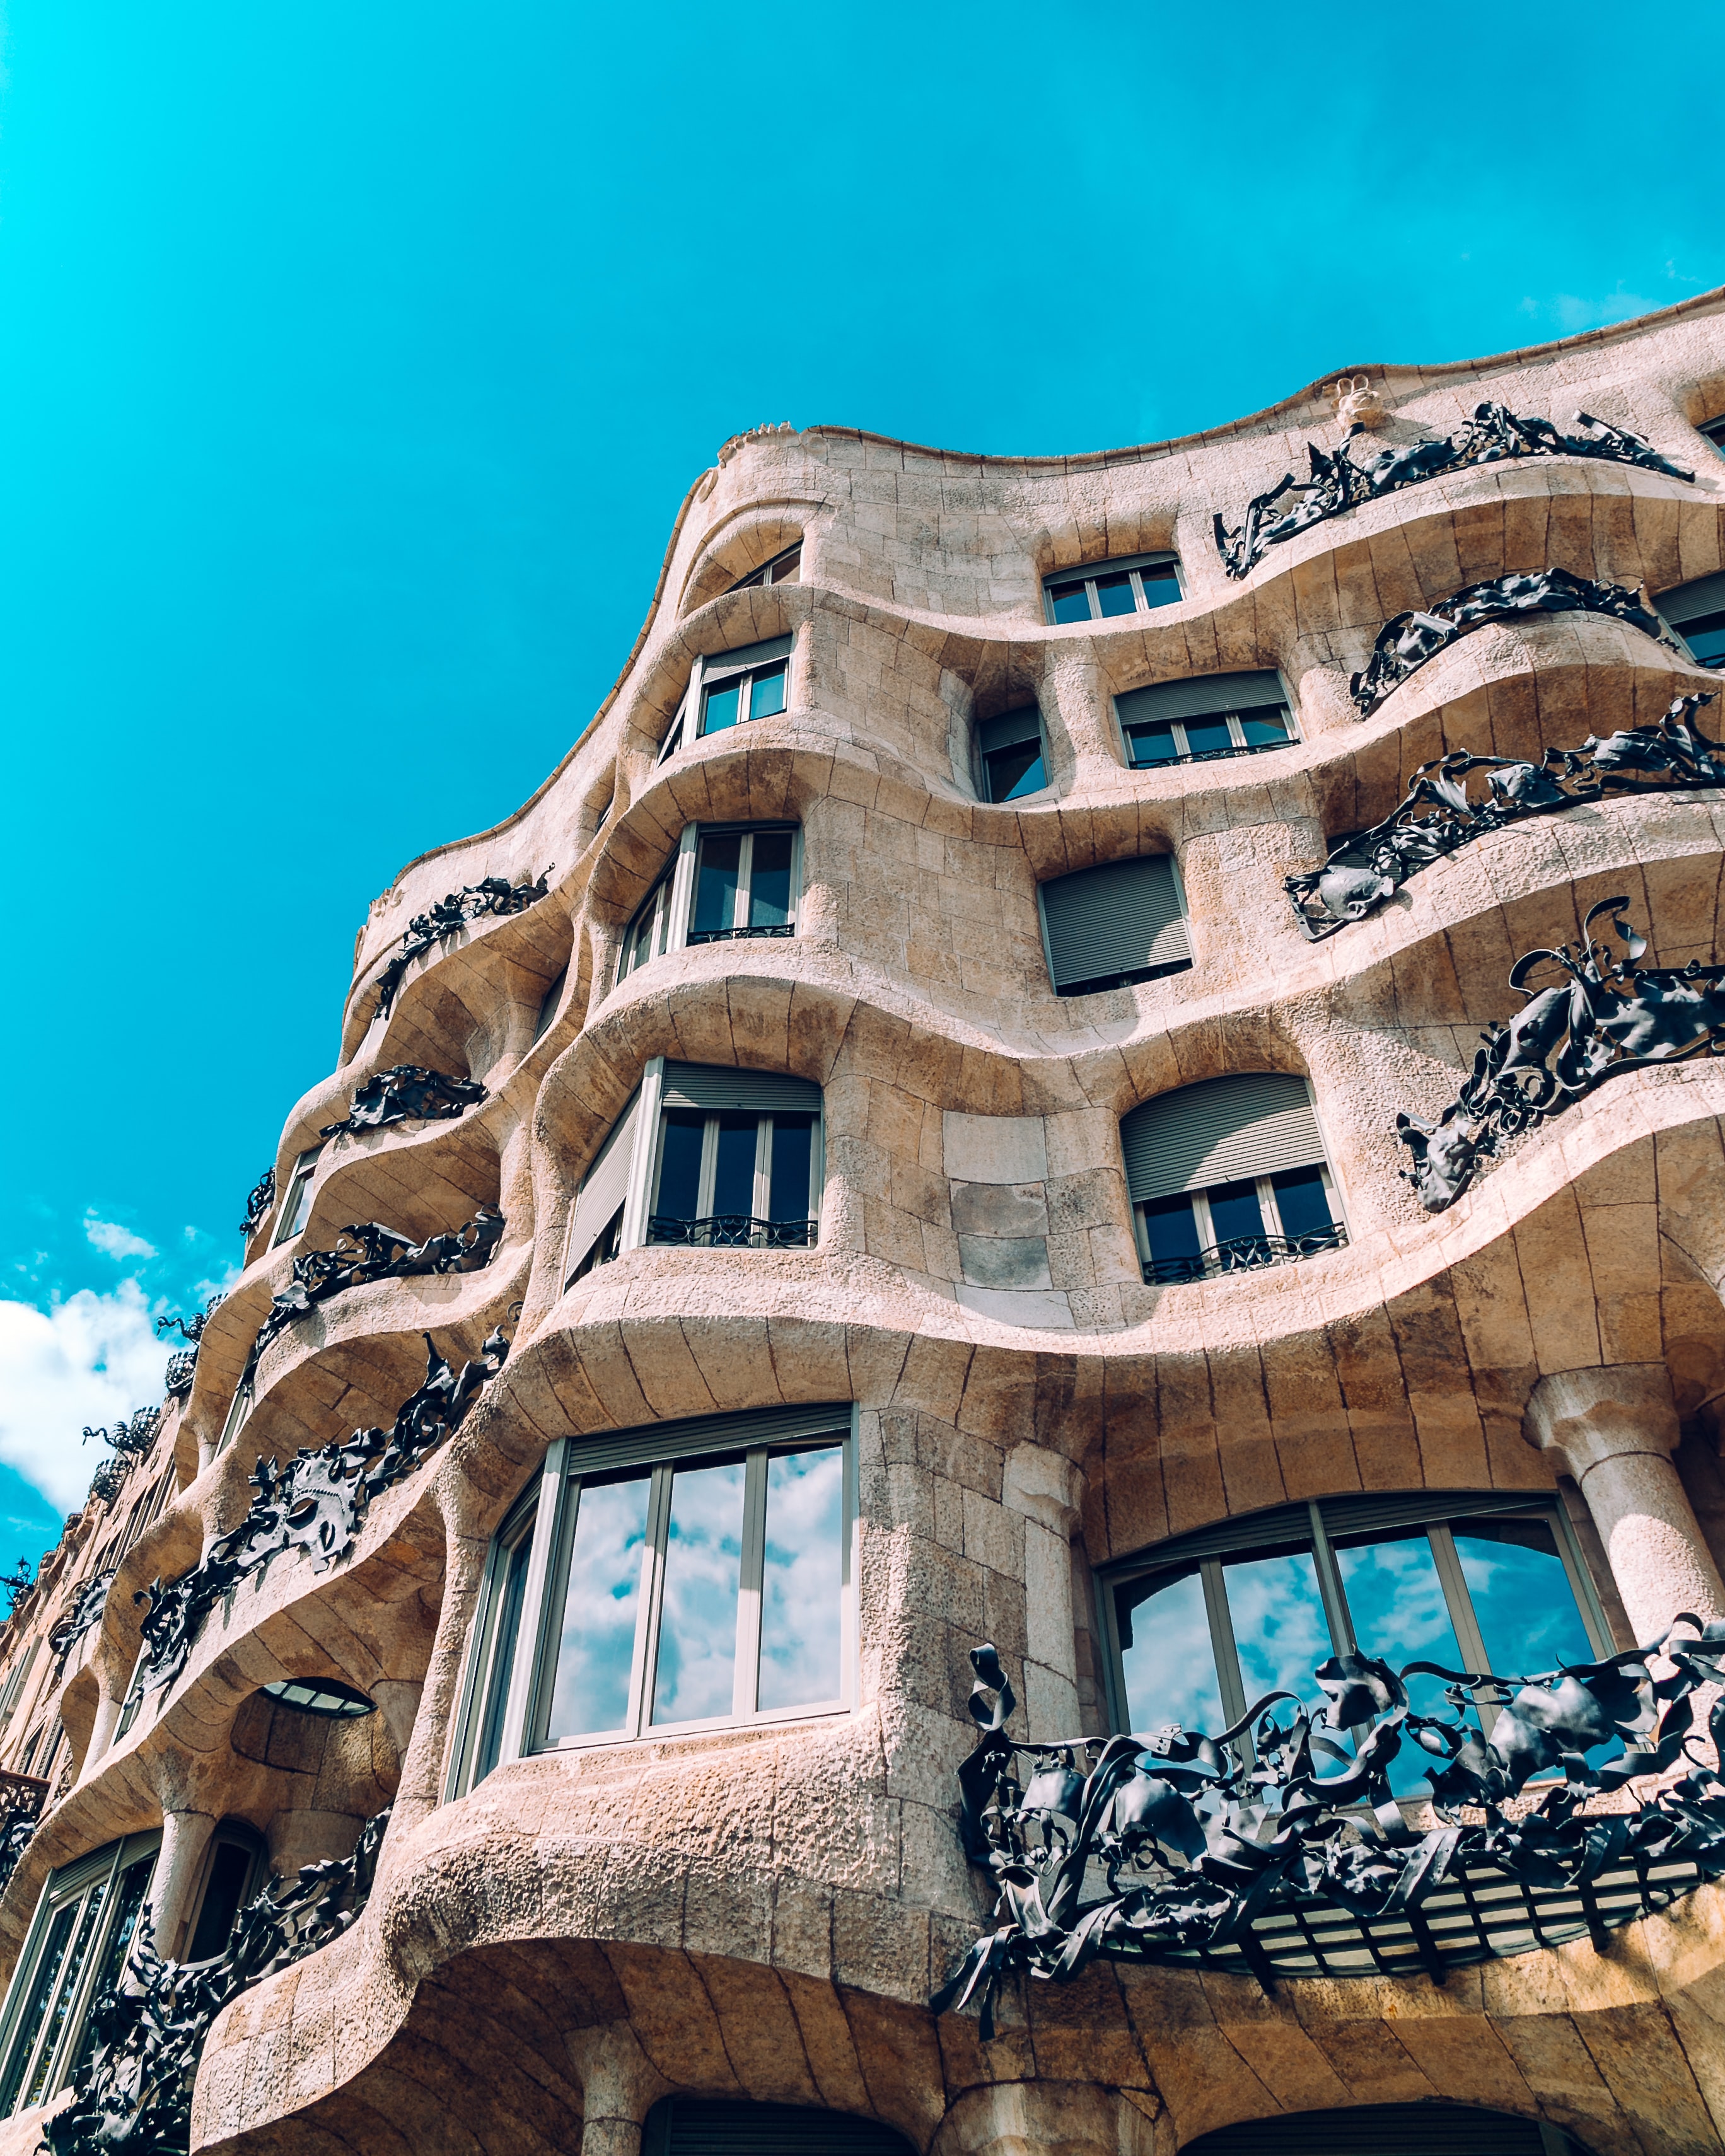 Detalhe da fachada da Casa Milá, em Barcelona, de Antoni Gaudí, conhecida popularmente como "La Pedrera" devido à sua arquitetura característica (Foto: Florencia Potter)